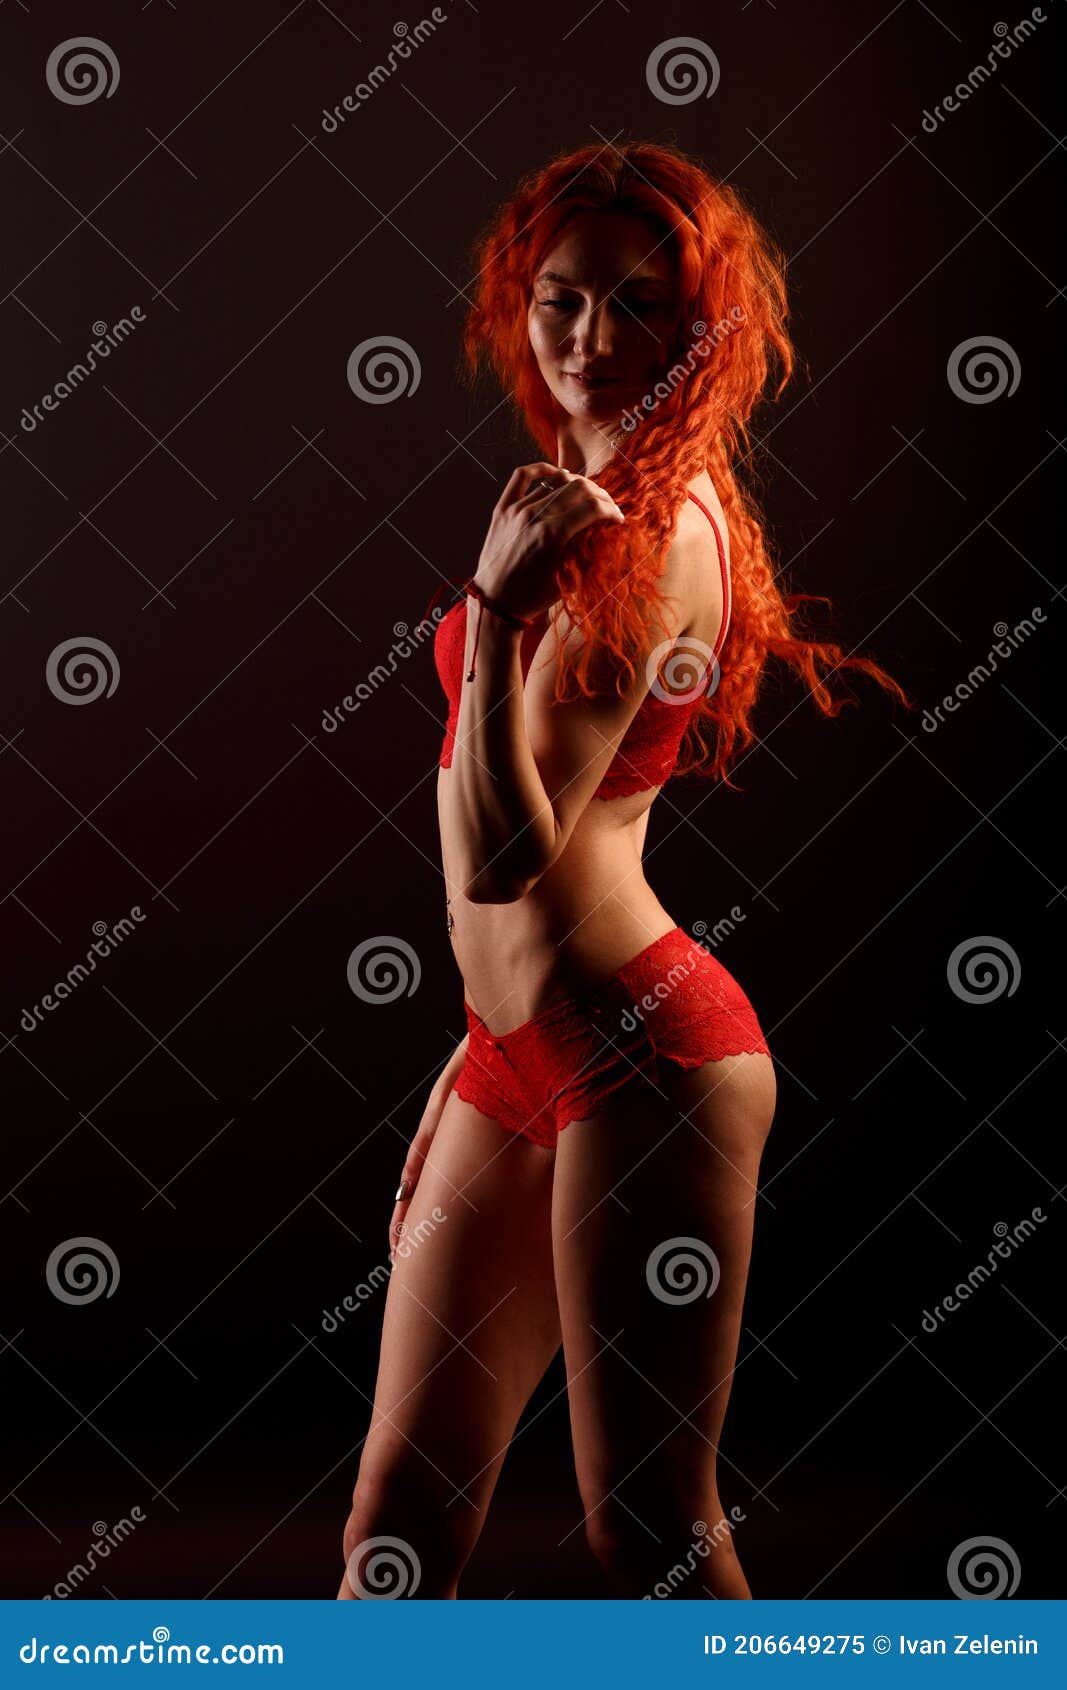 Nude Sunbathing Selfies Redhead Women Nude Dancing